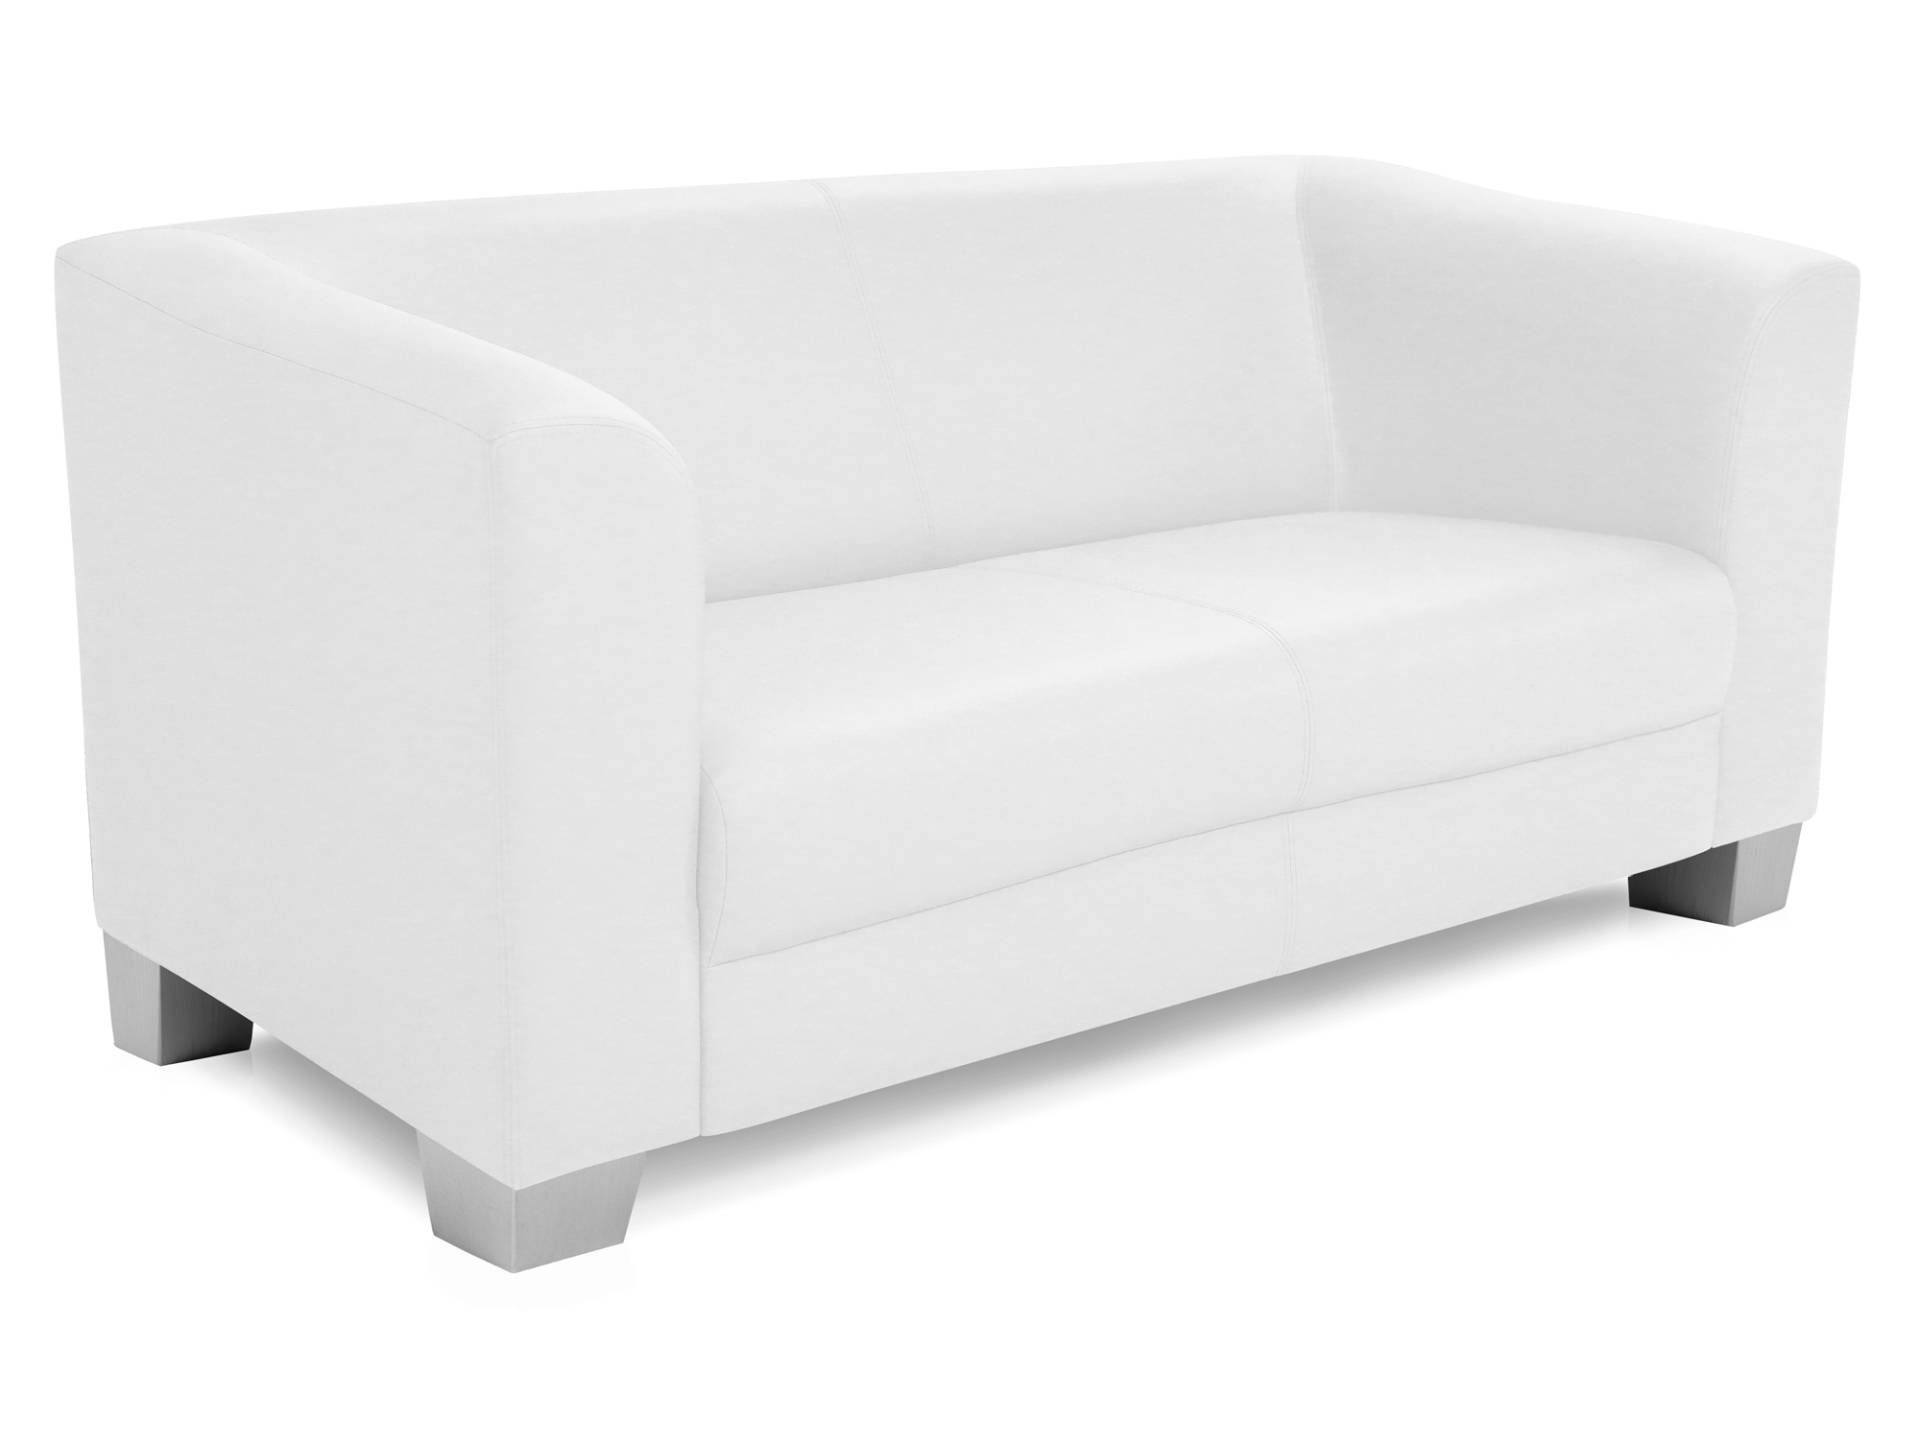 CHICAGO 2-Sitzer Sofa, Material Kunstleder von Möbel-Eins